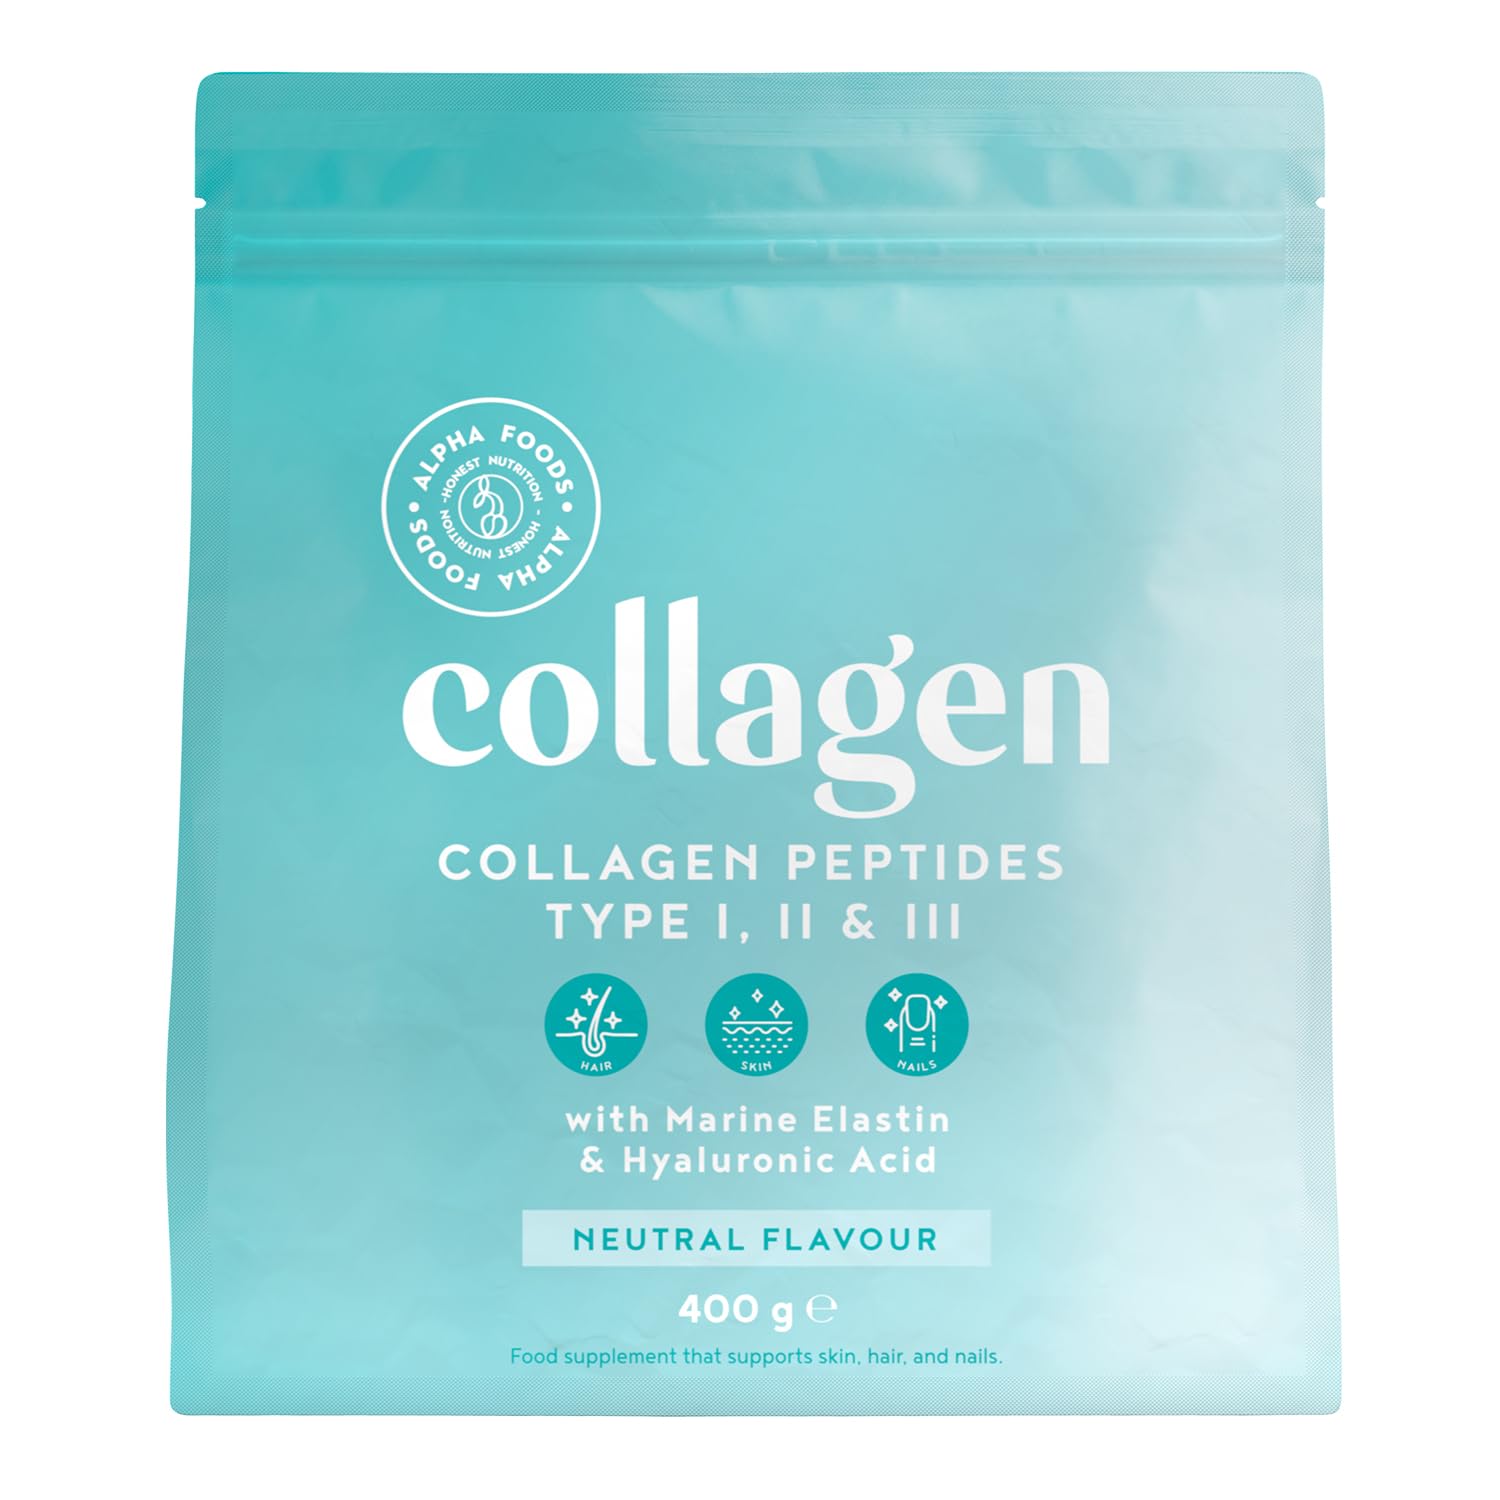 Alpha Foods Collagen Pulver (400g) - Kollagen Hydrolysat Peptide Type I, II, & III - Hochdosiert Kollagenpulver mit Hyaluronsäure und Elastin - Geschmacksneutral - Aus Deutschland